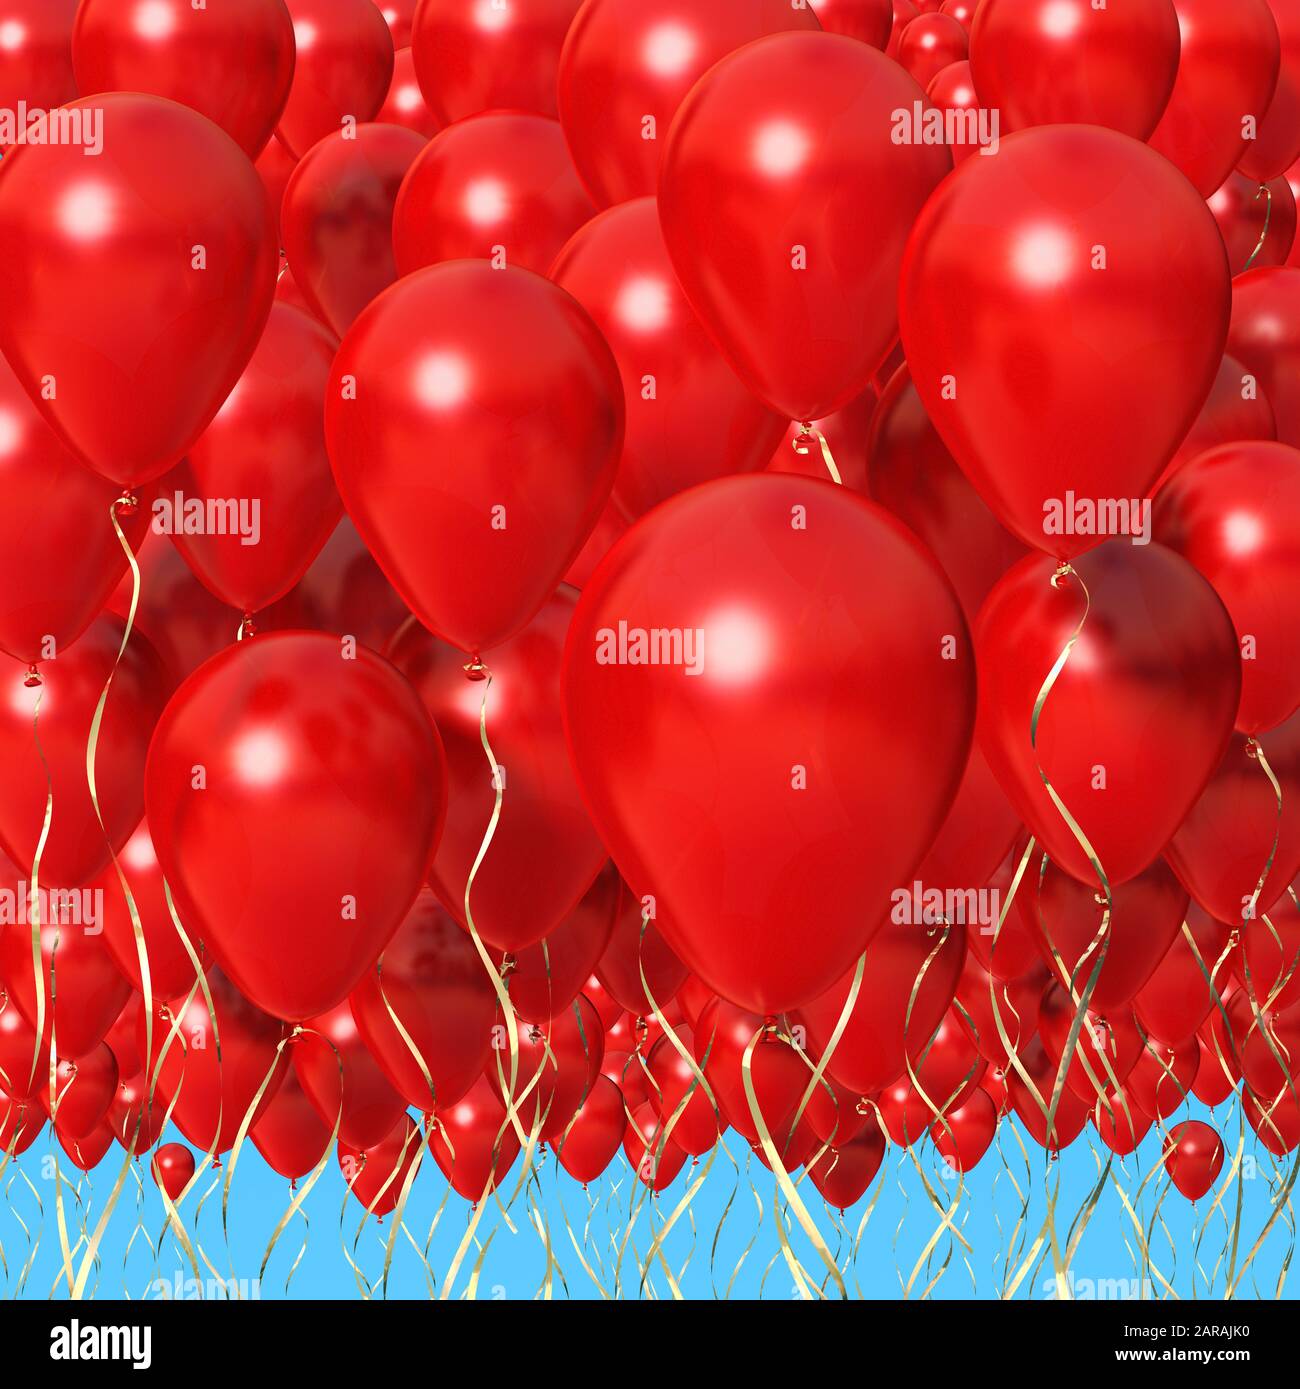 Rote Luftballons drängten sich gegen einen blauen Himmel. 99 rote Luftballons Stockfoto